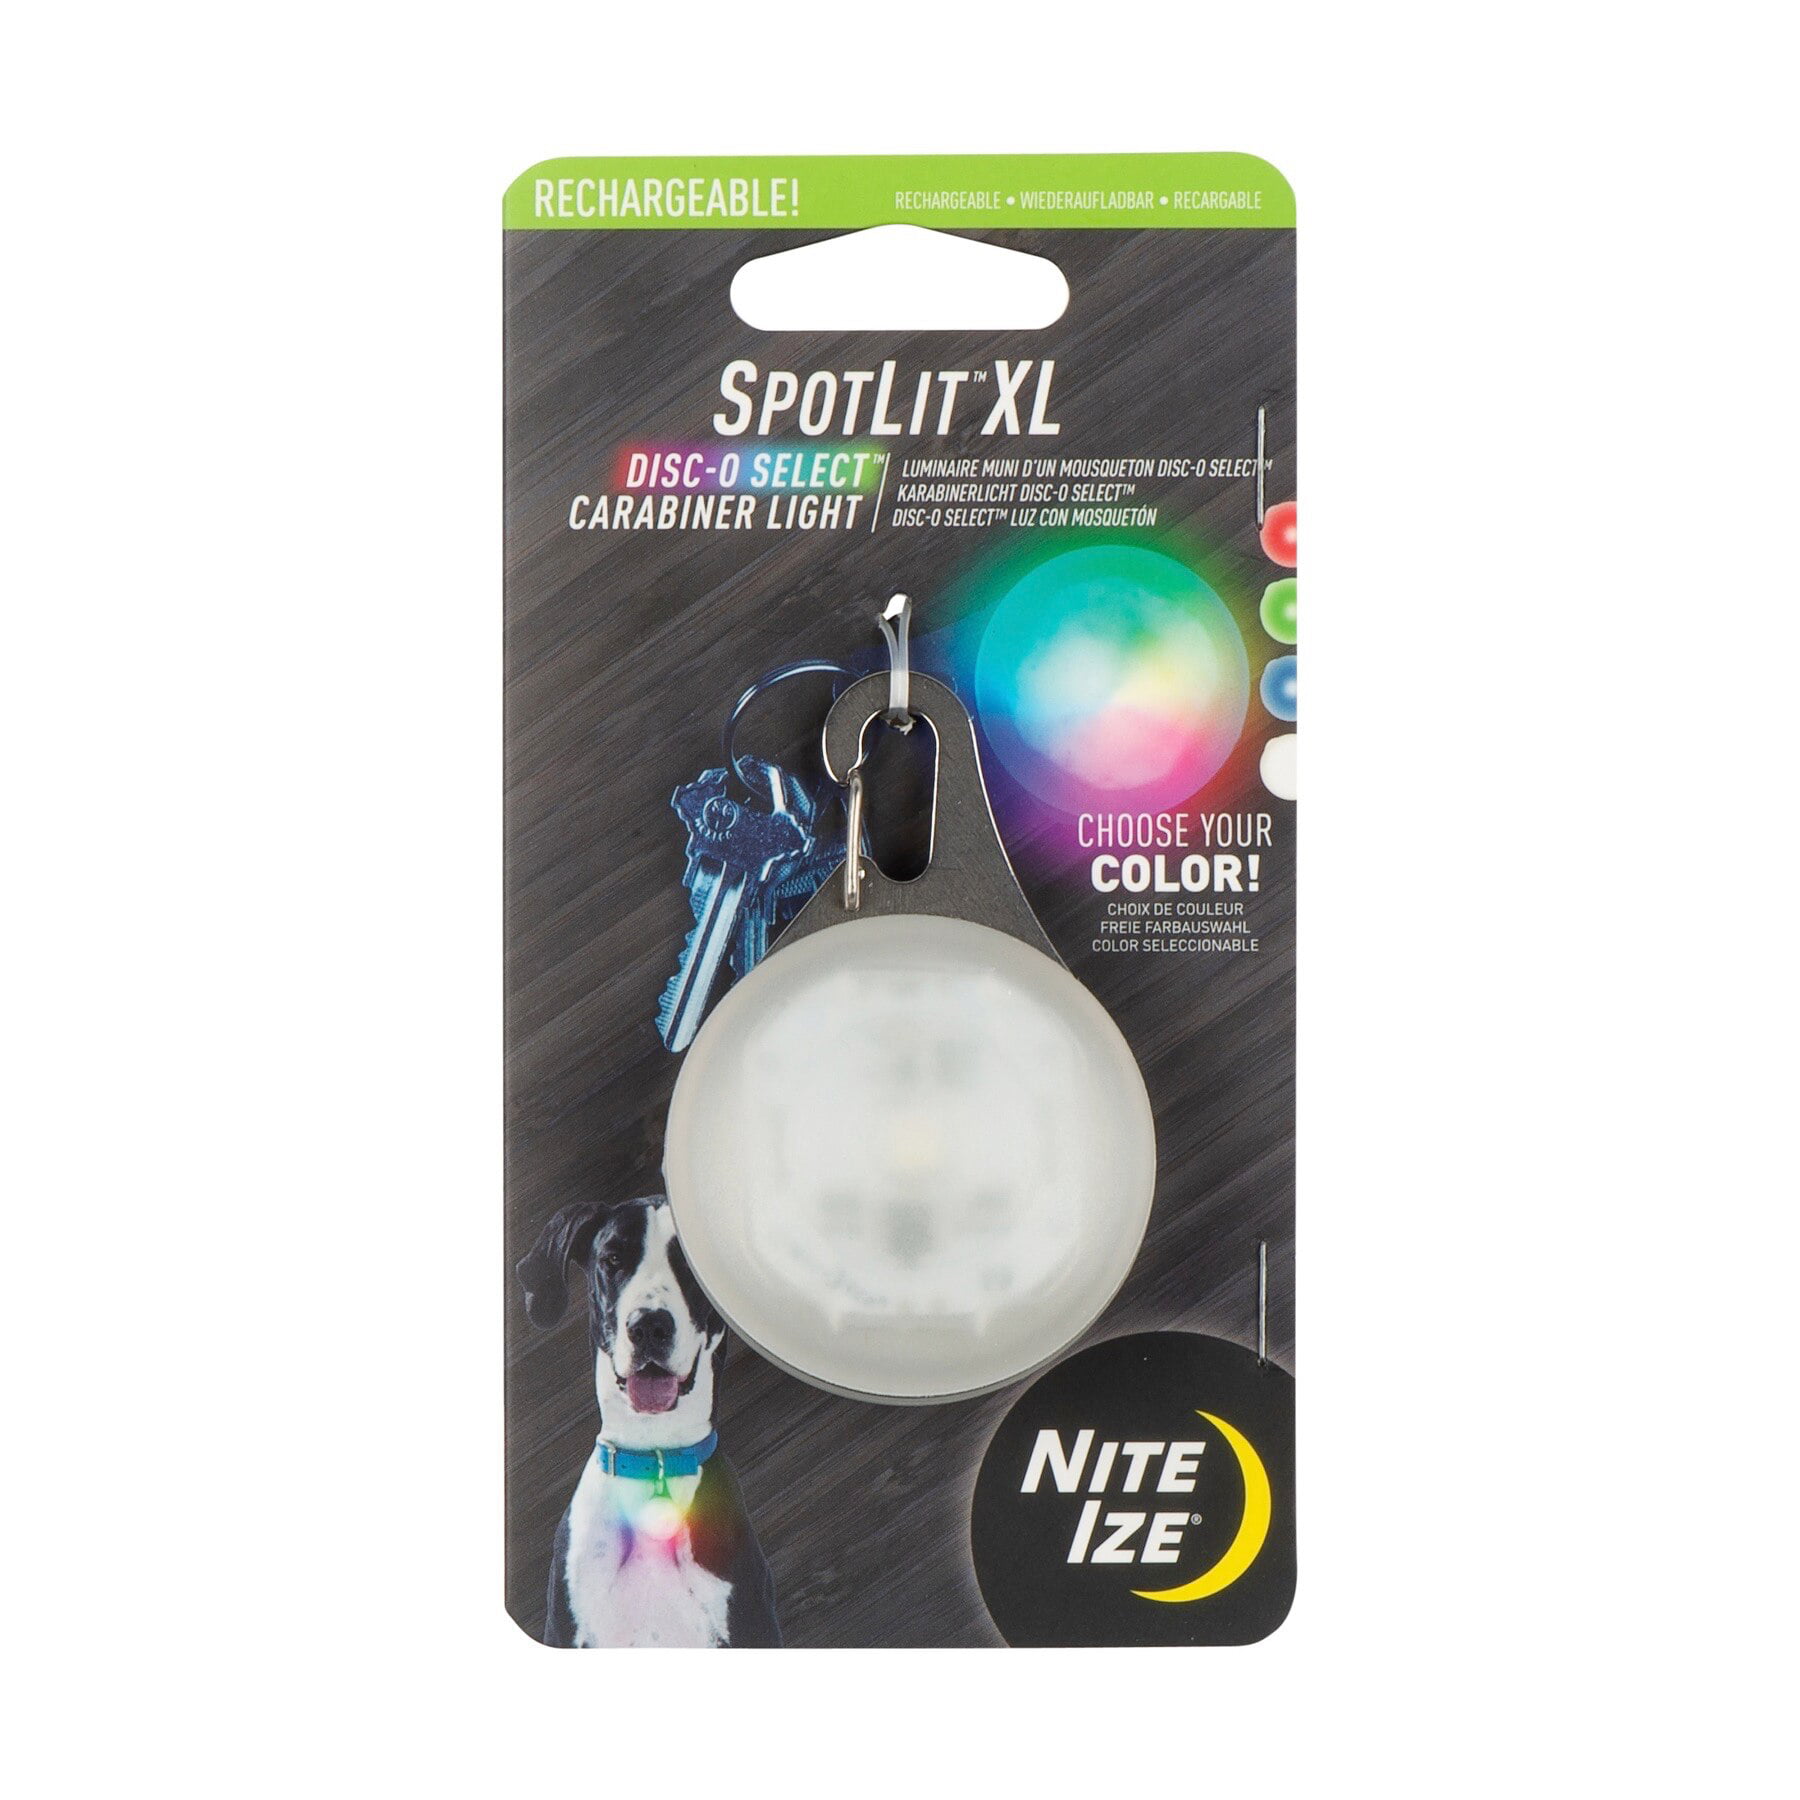 Nite Ize SpotLit LED Carabiner Light White Mini Keychain Collar Safety 4-Pack